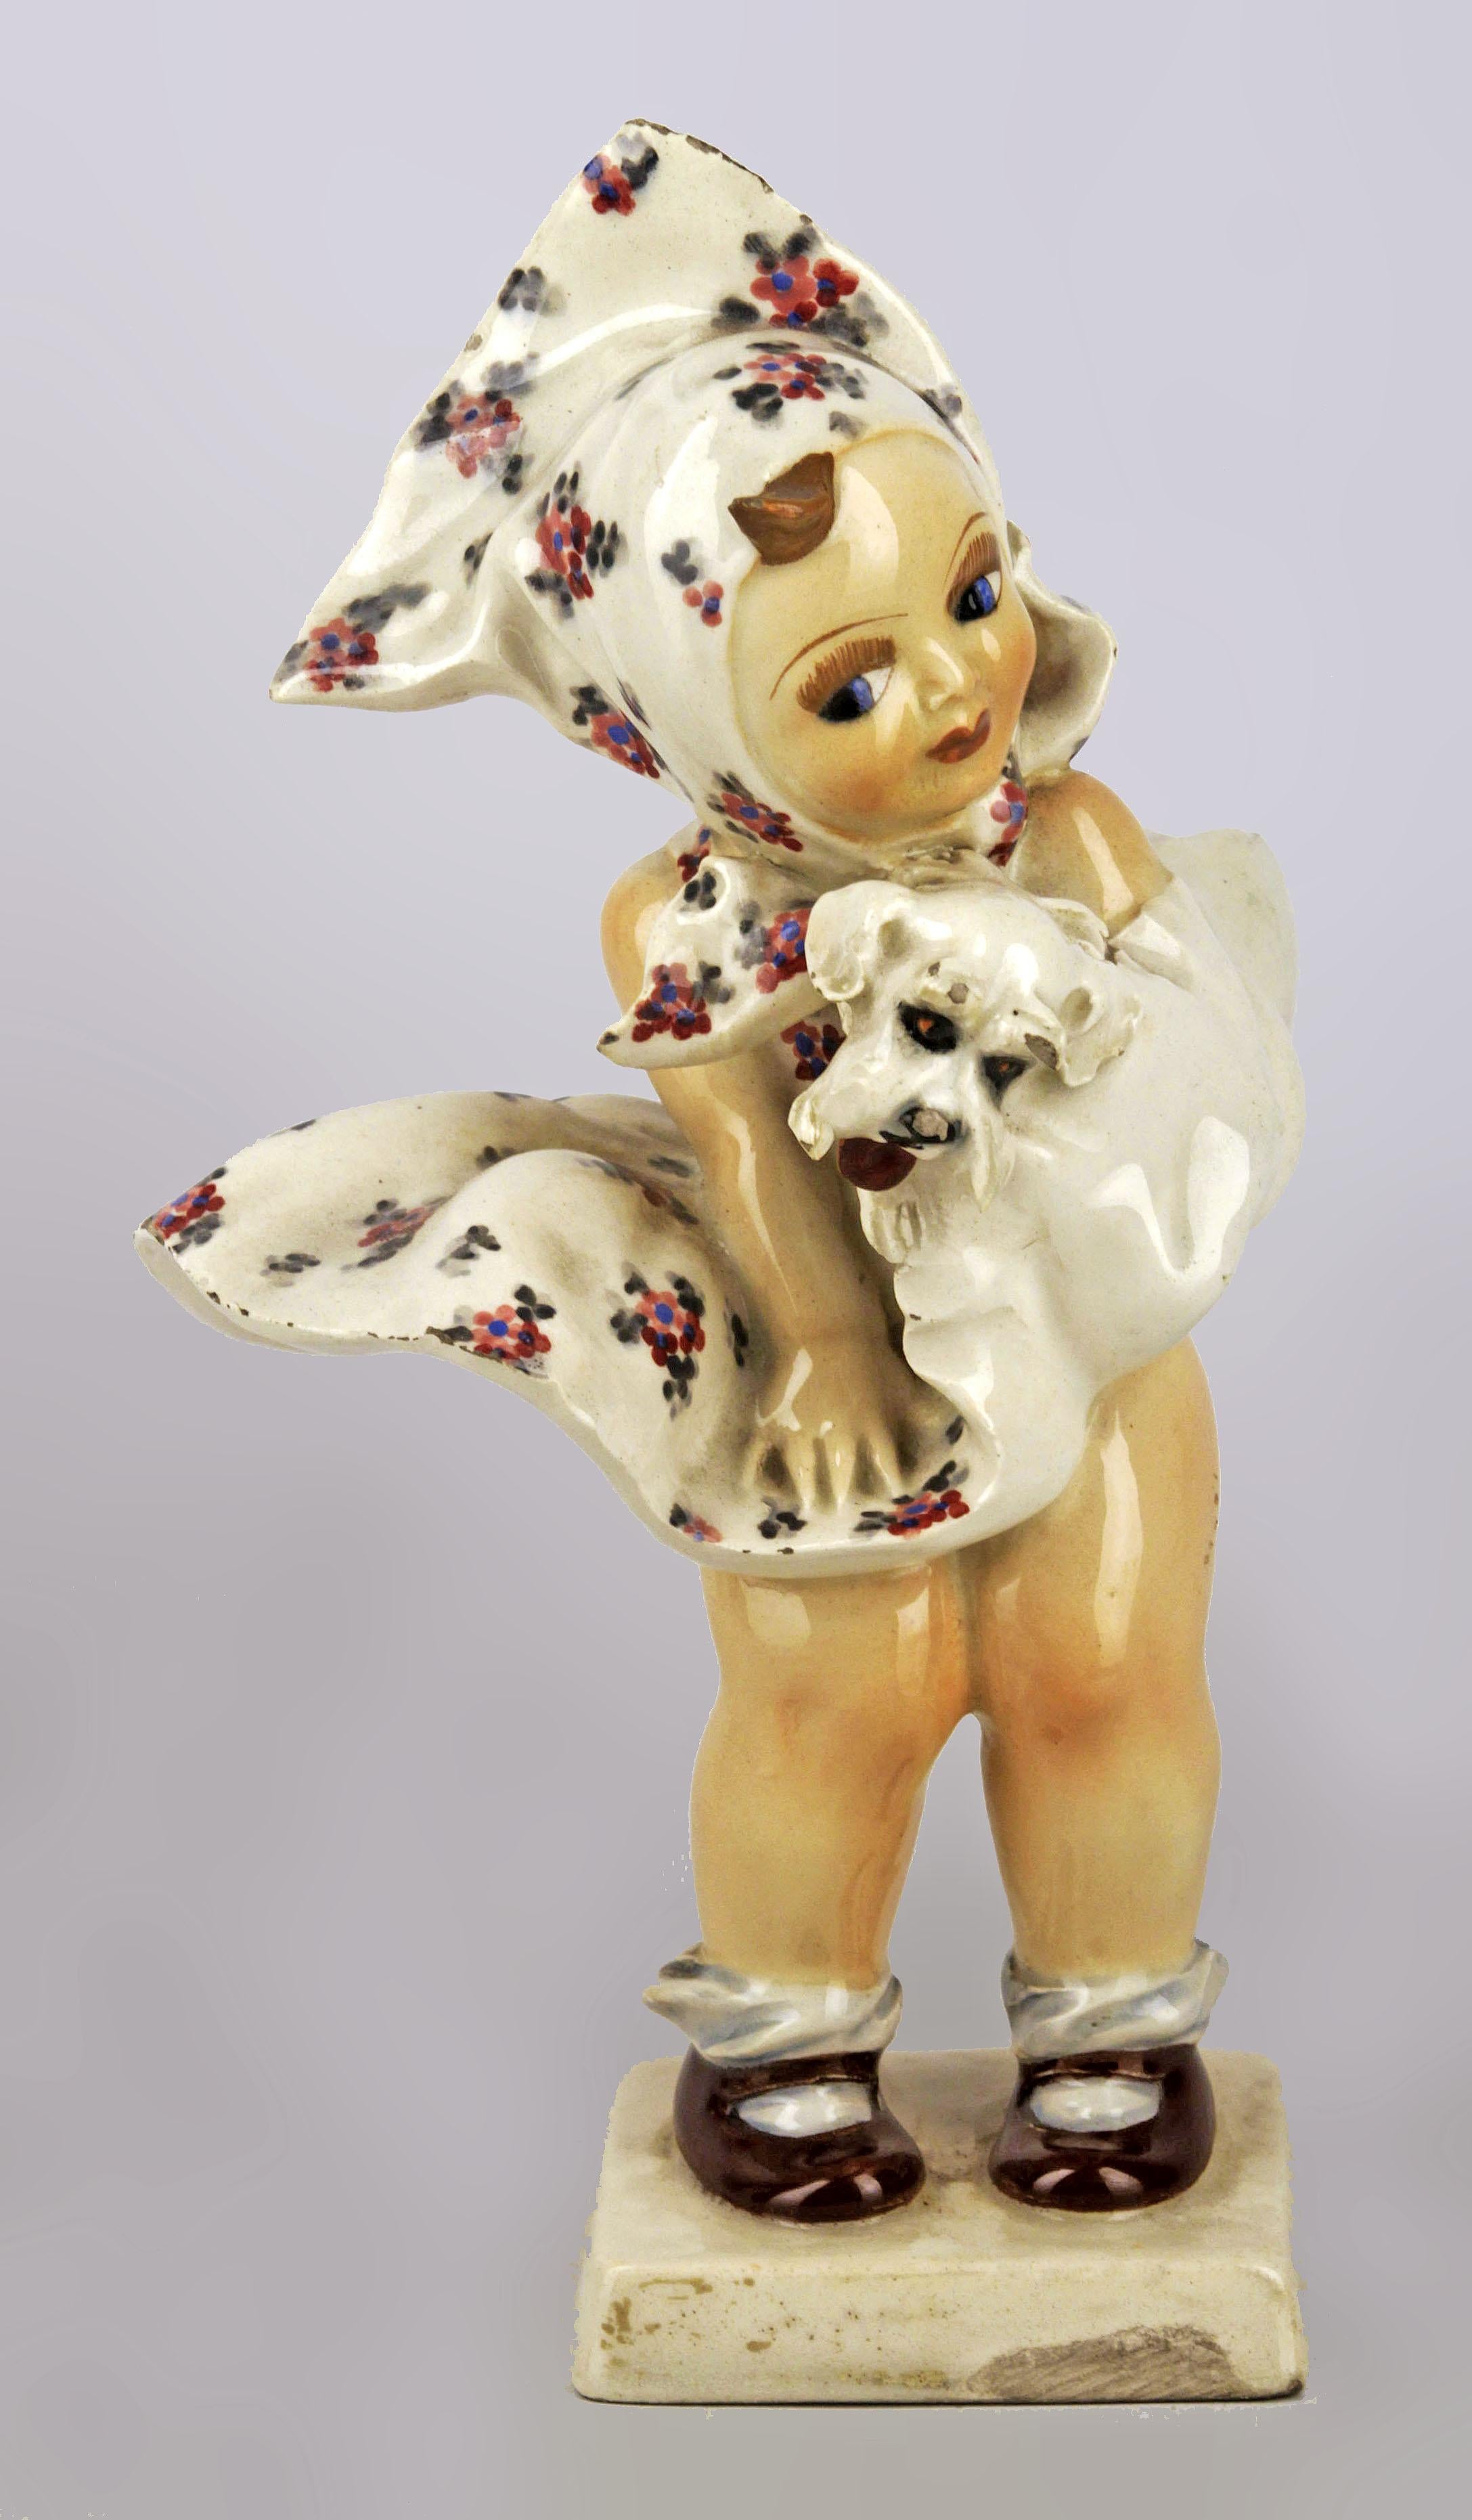 Sculpture italienne des années 1950 en céramique émaillée de Turin, peinte à la main, représentant une fille avec une robe et un chien, signée par C.I.C.

Par : A.I.C. C.
Matériau : céramique, peinture
Technique : moulé, pressé, peint, peint à la